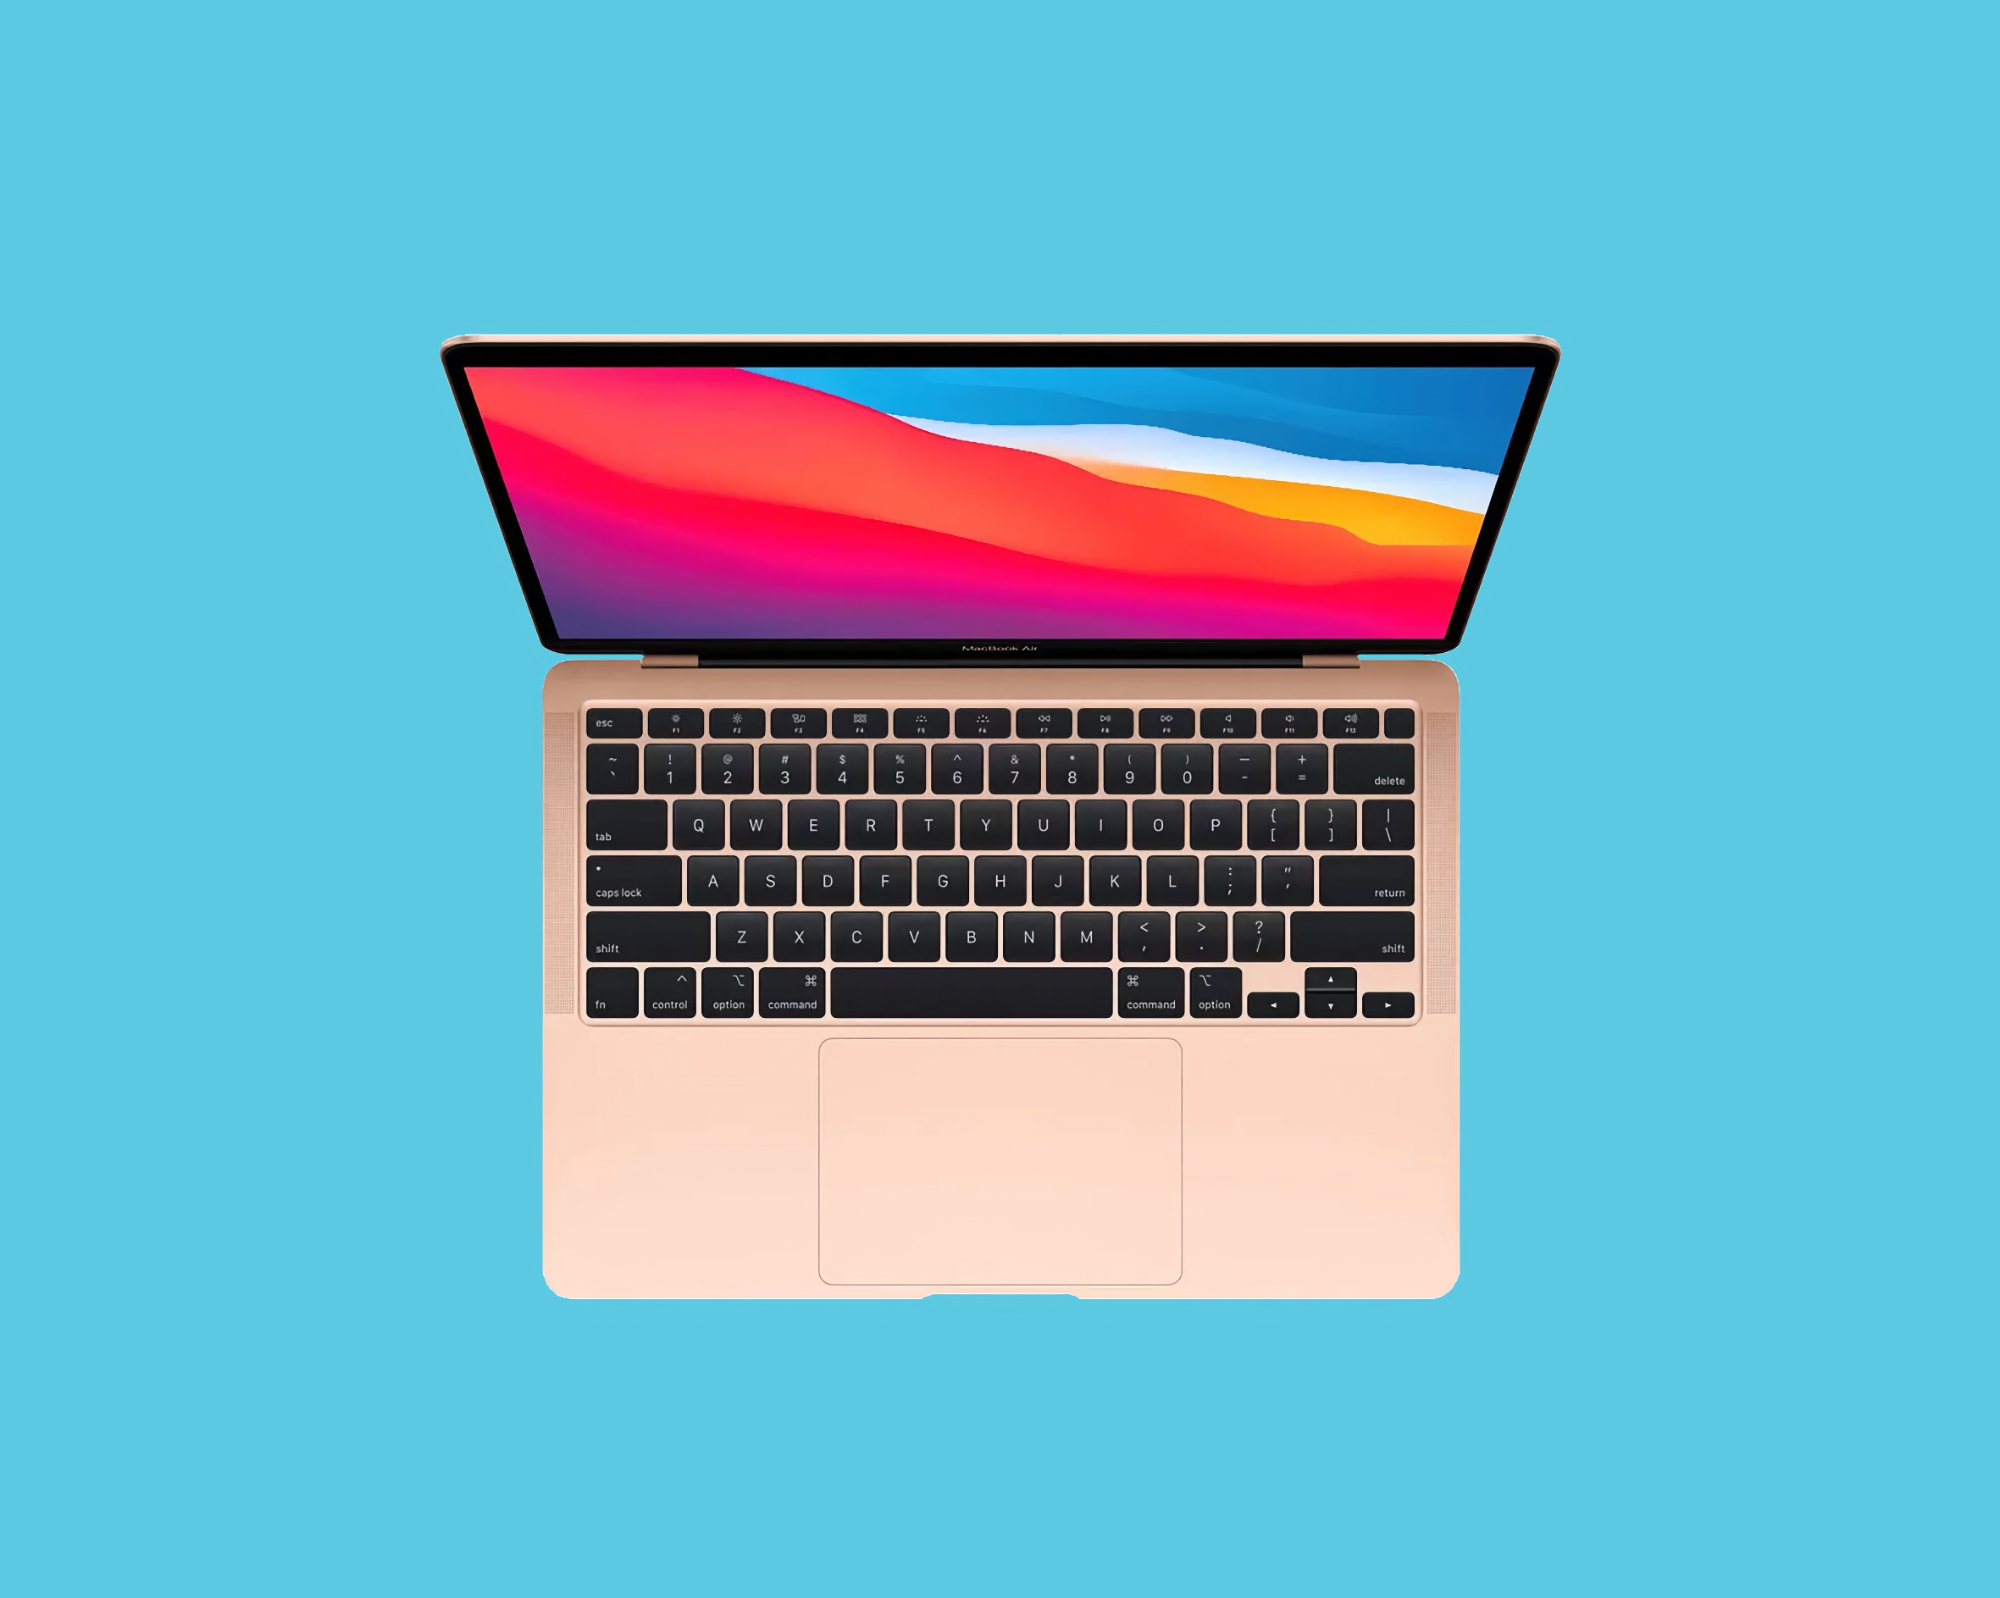 Oferta del día: El MacBook Air con chip M1 se puede comprar en Amazon con 250 dólares de descuento